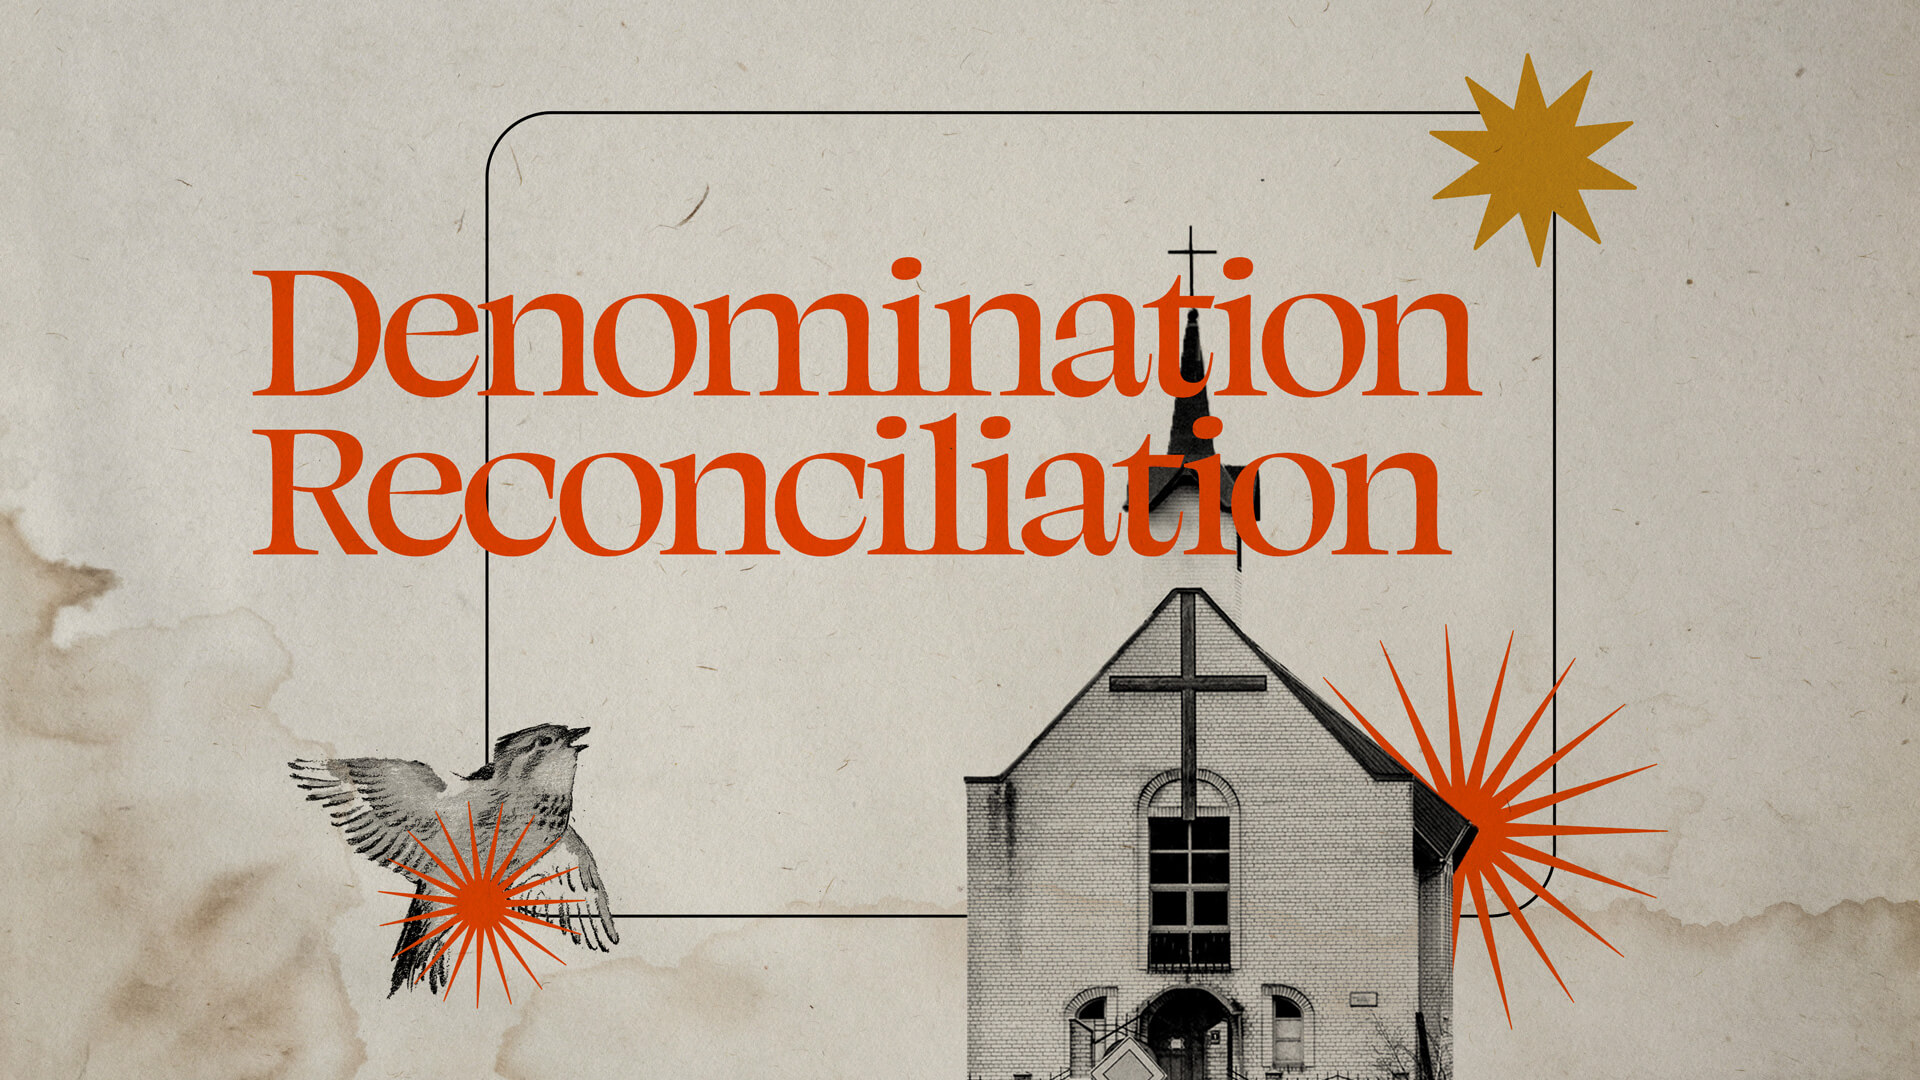 Denomination Reconciliation